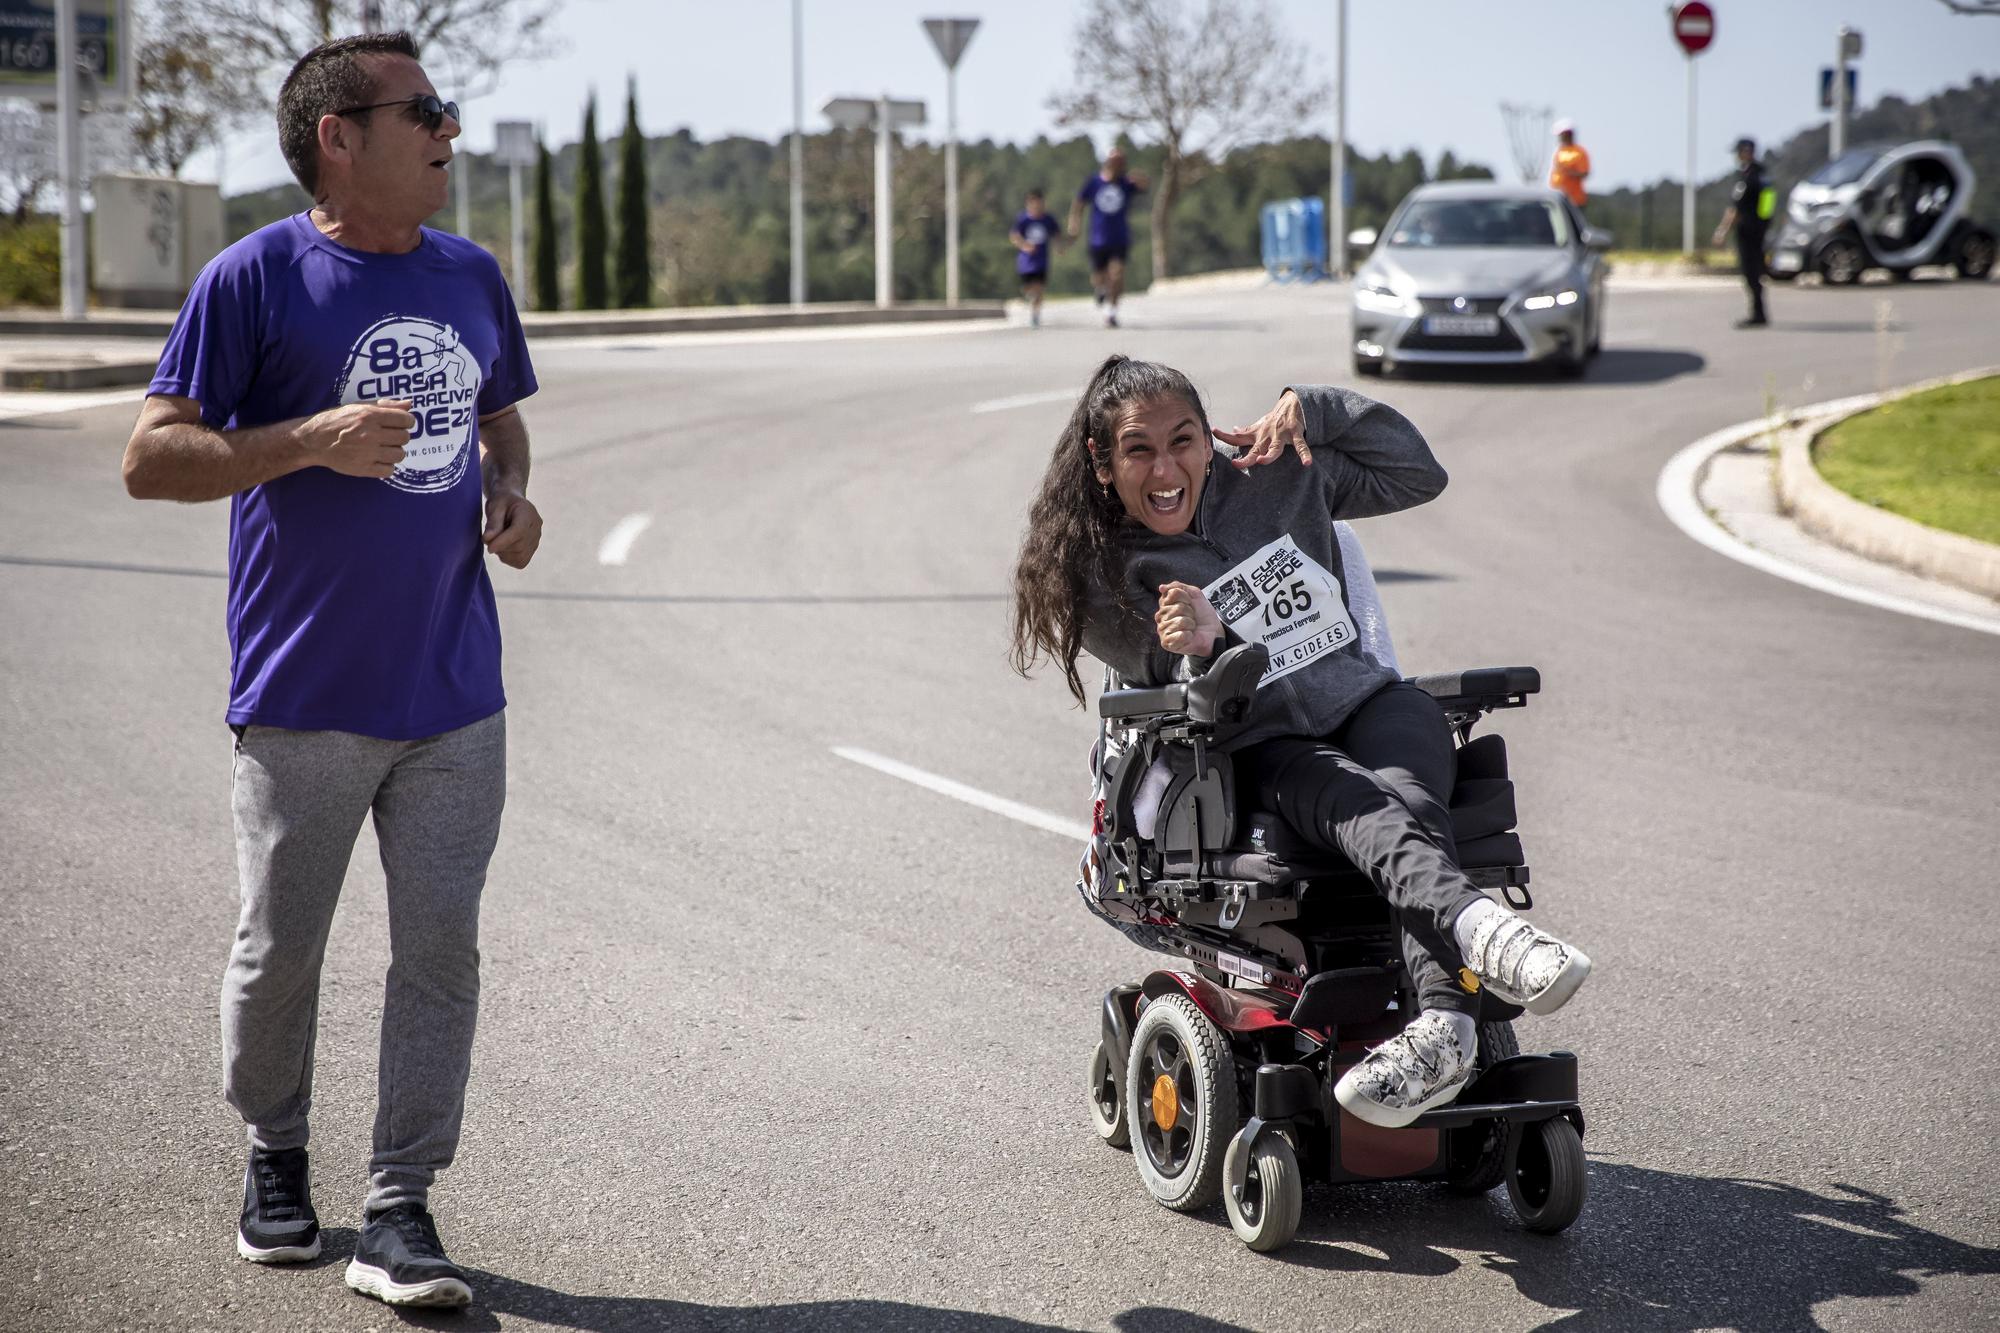 La carrera solidaria CIDE en favor del Asperger reúne a 850 atletas